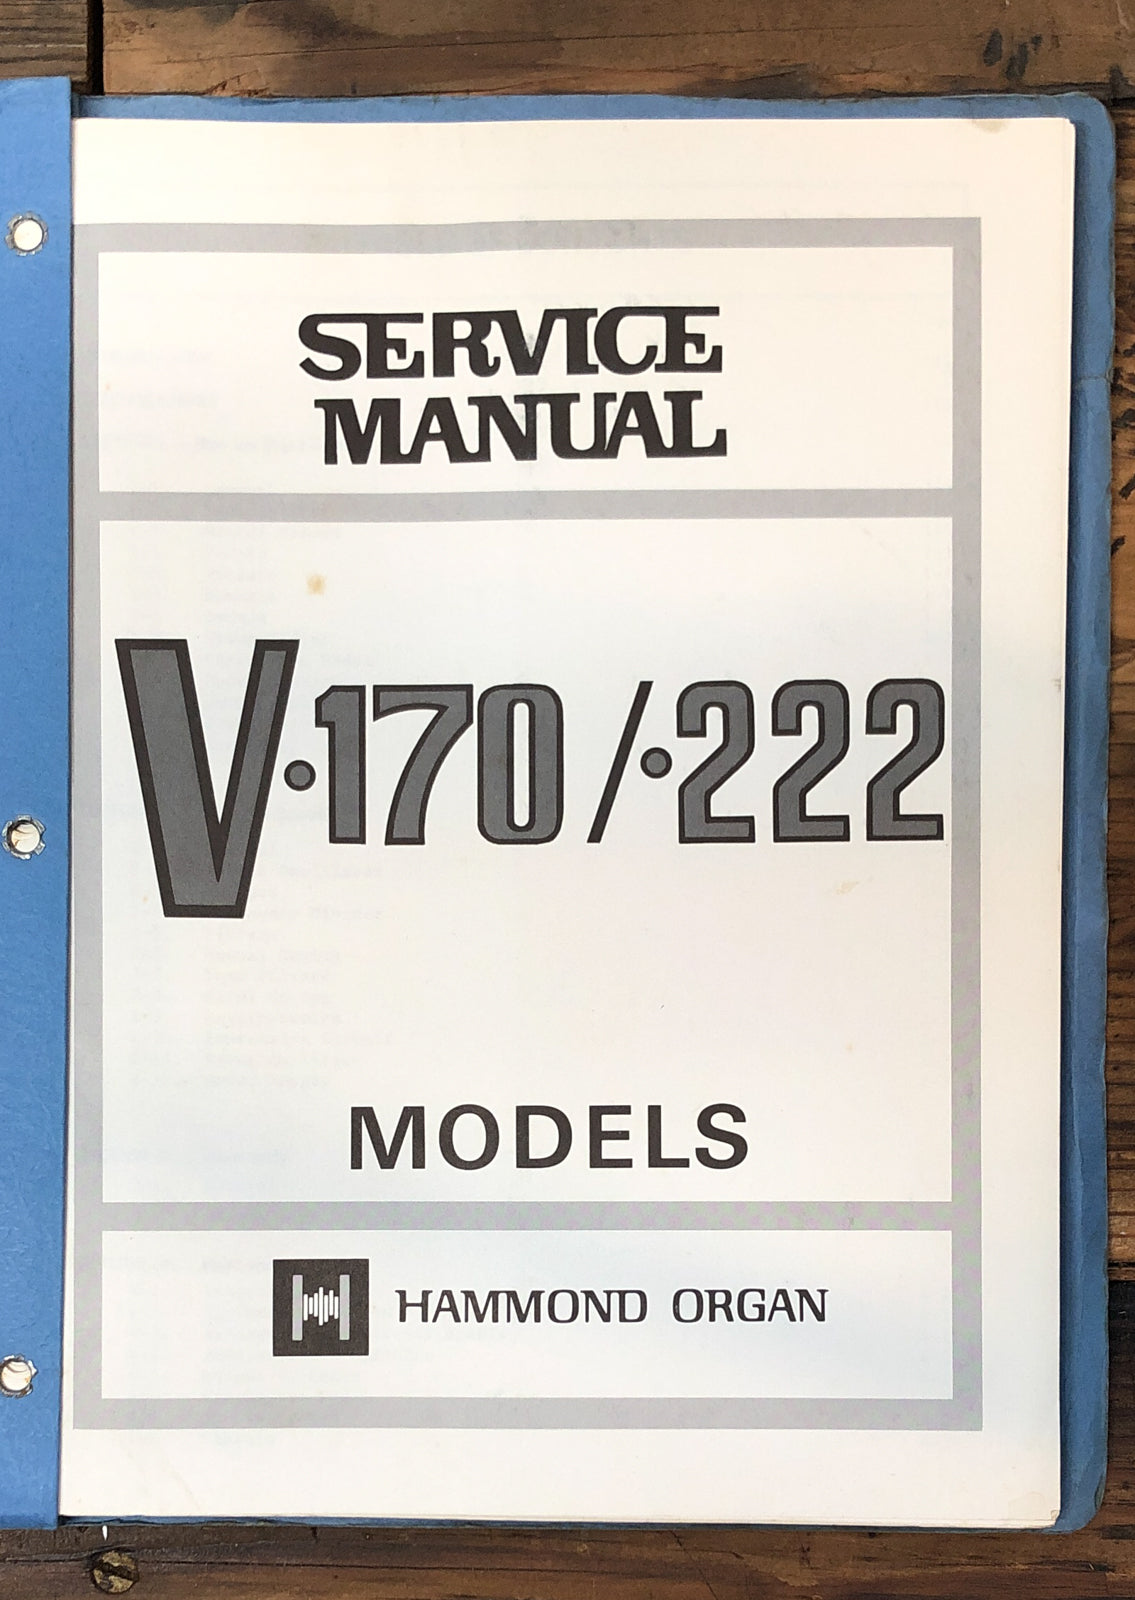 Hammond Organ V-170 V-222  Service Manual *Original*